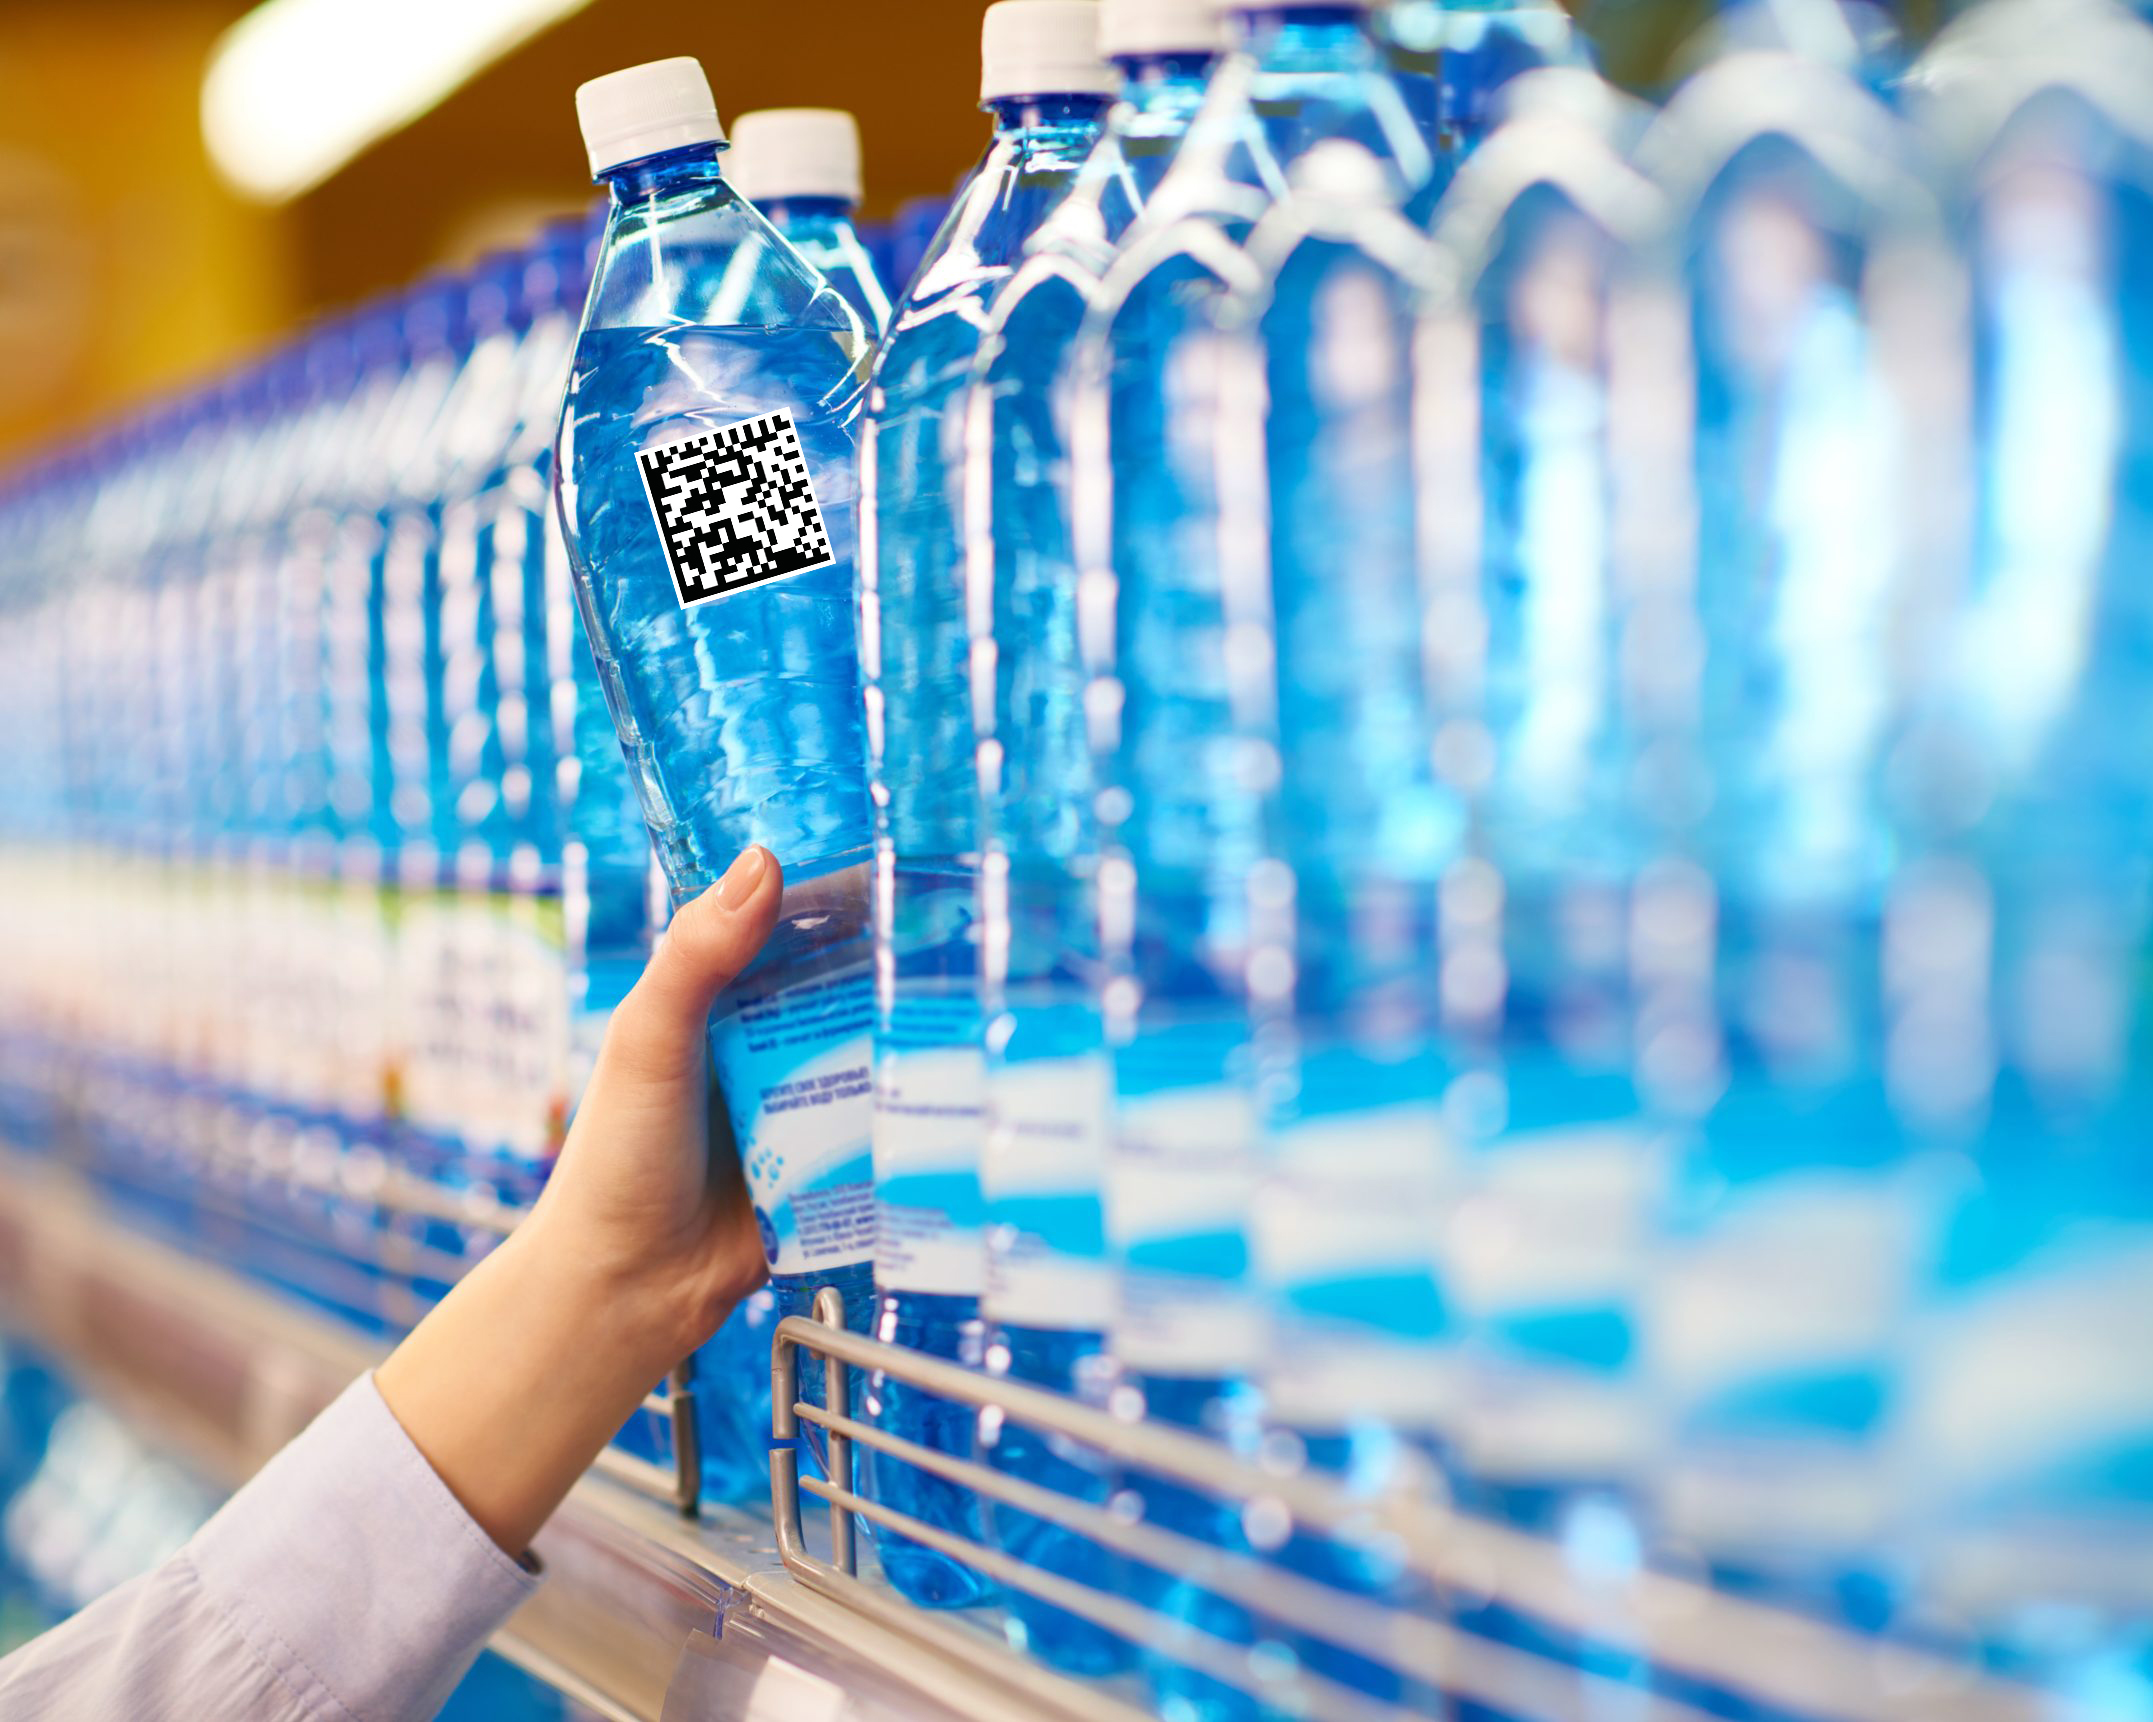 Промышленная и питьевая. Вода питьевая бутилированная. Бутилированная минеральная вода. Бутылка для воды. Пластиковые бутылки в магазине.